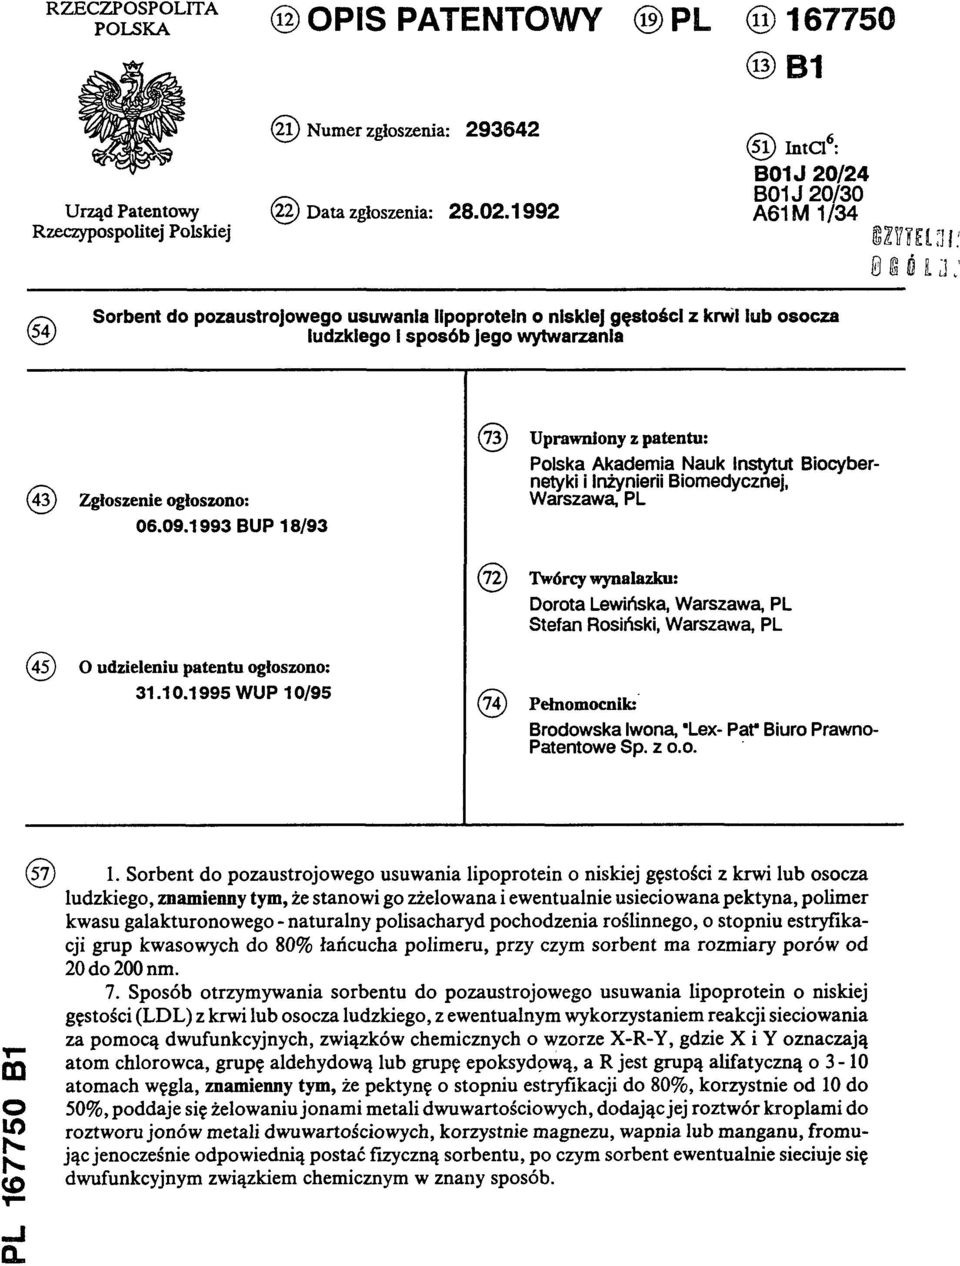 wytwarzania (73) Uprawniony z patentu: Polska Akademia Nauk Instytut Biocybernetyki i Inżynierii Biomedycznej, (43) Zgłoszenie ogłoszono: Warszawa, PL 06.09.